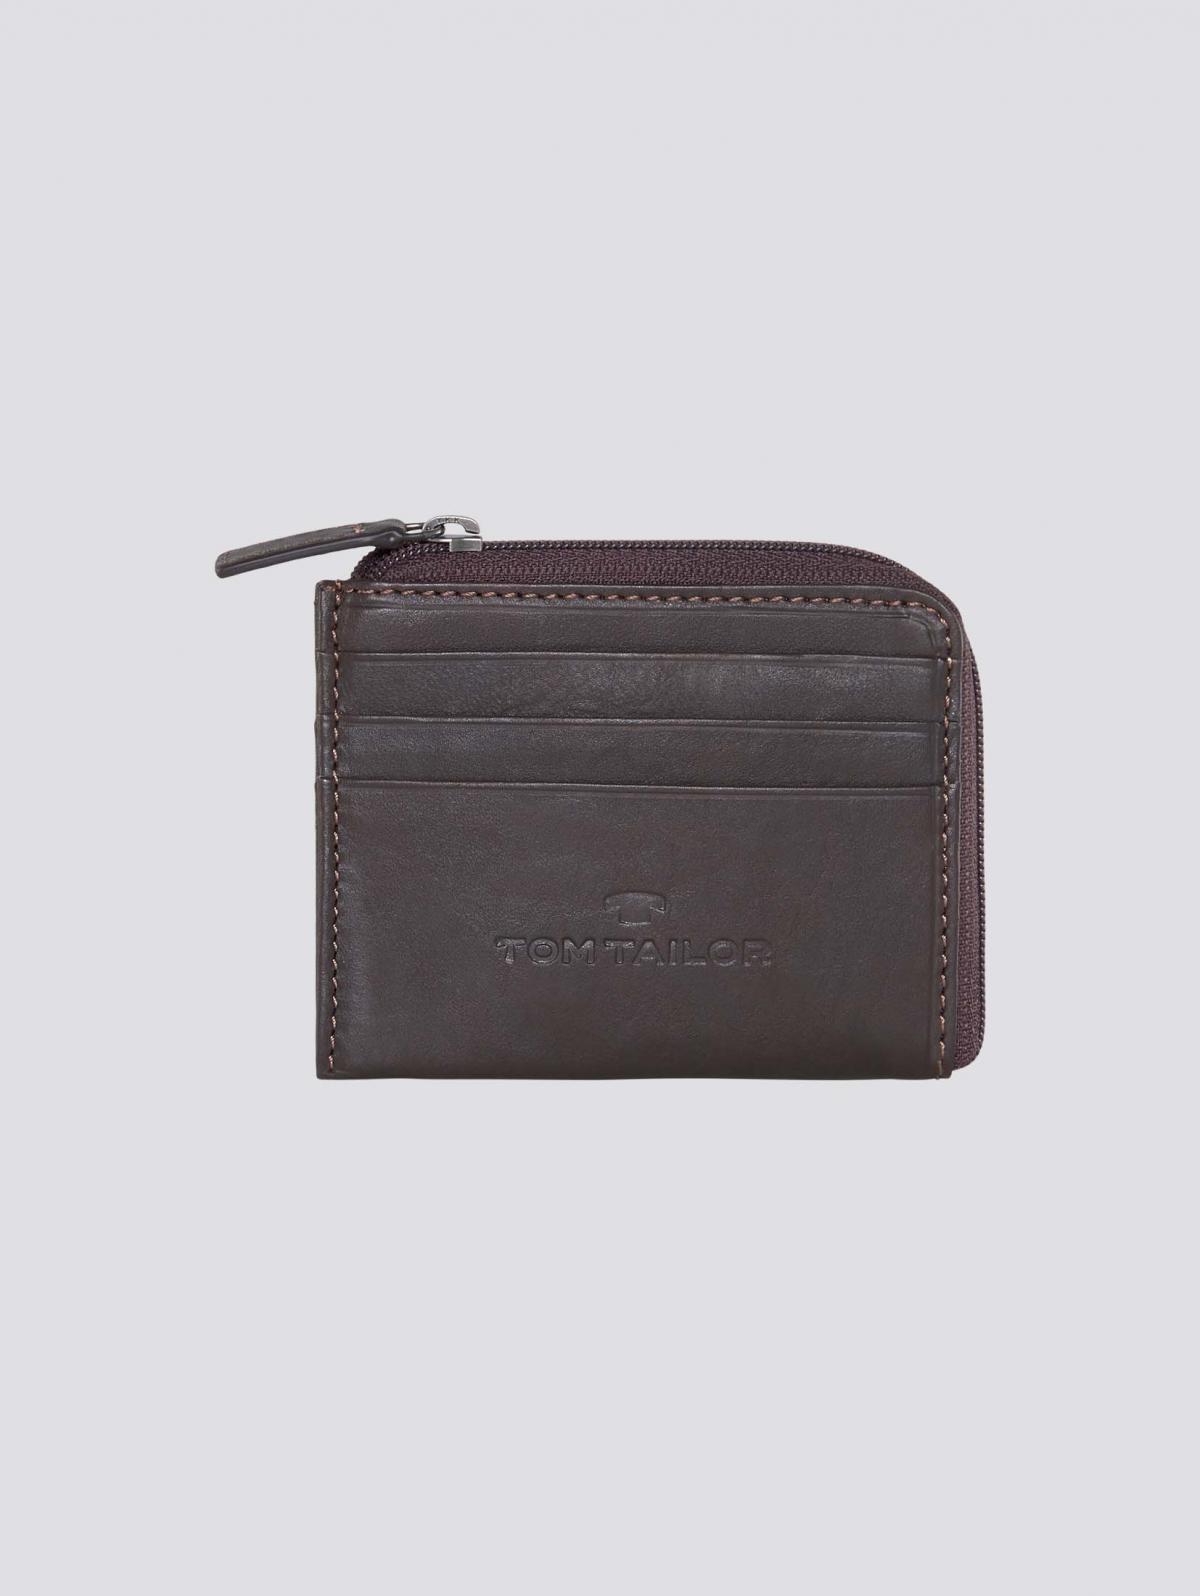 Tom tailor femmes/hommes fictif sac portefeuille porte-monnaie portefeuille noir NEUF 